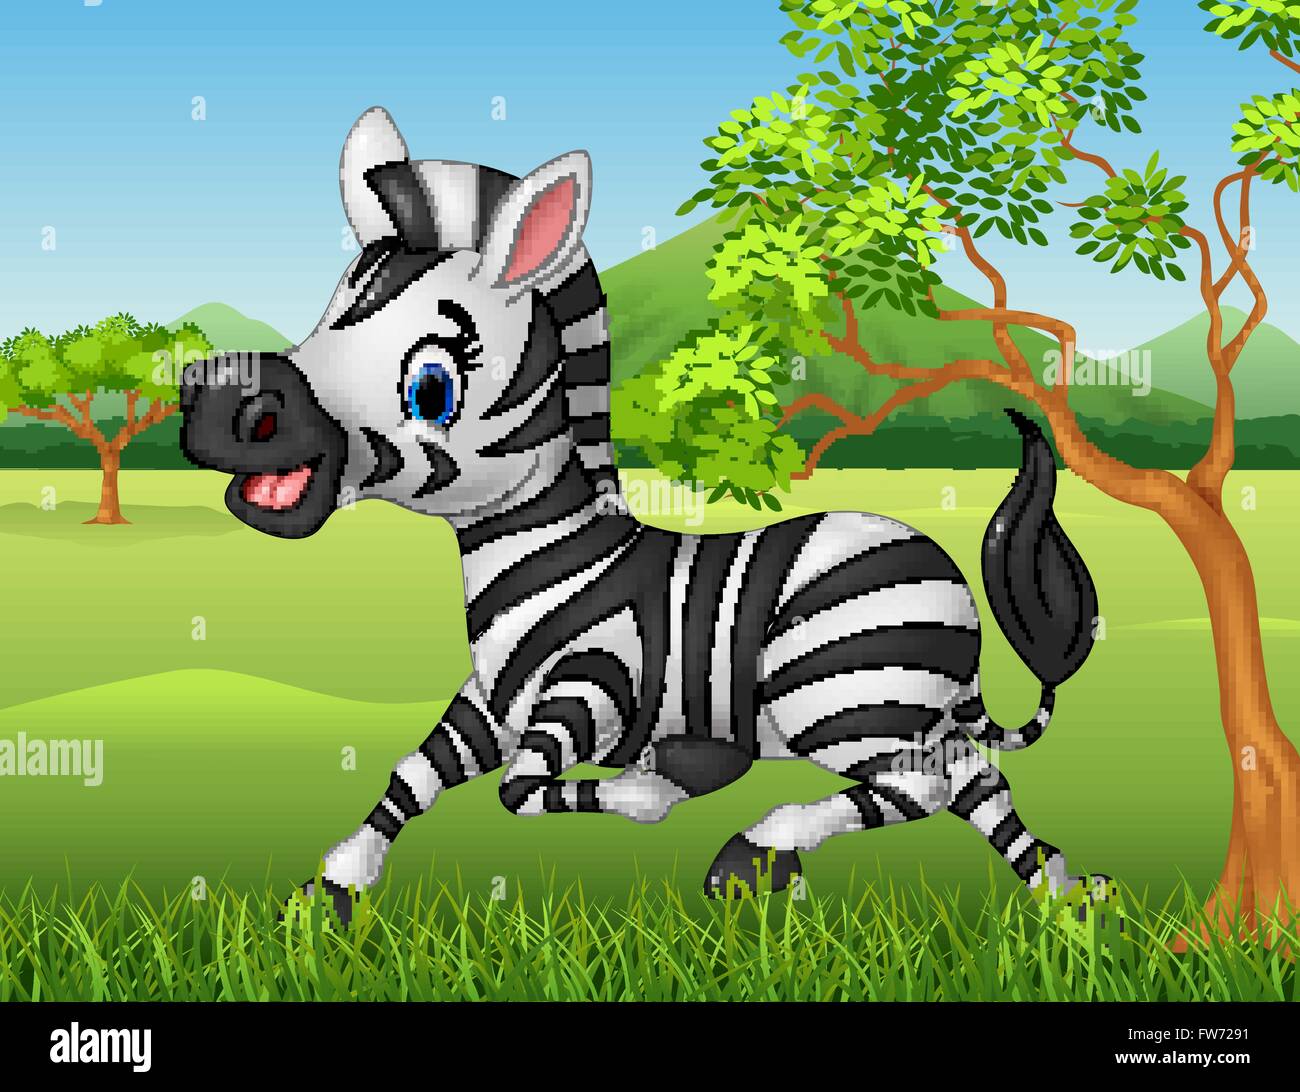 Heureux zebra s'exécutant dans la jungle Illustration de Vecteur